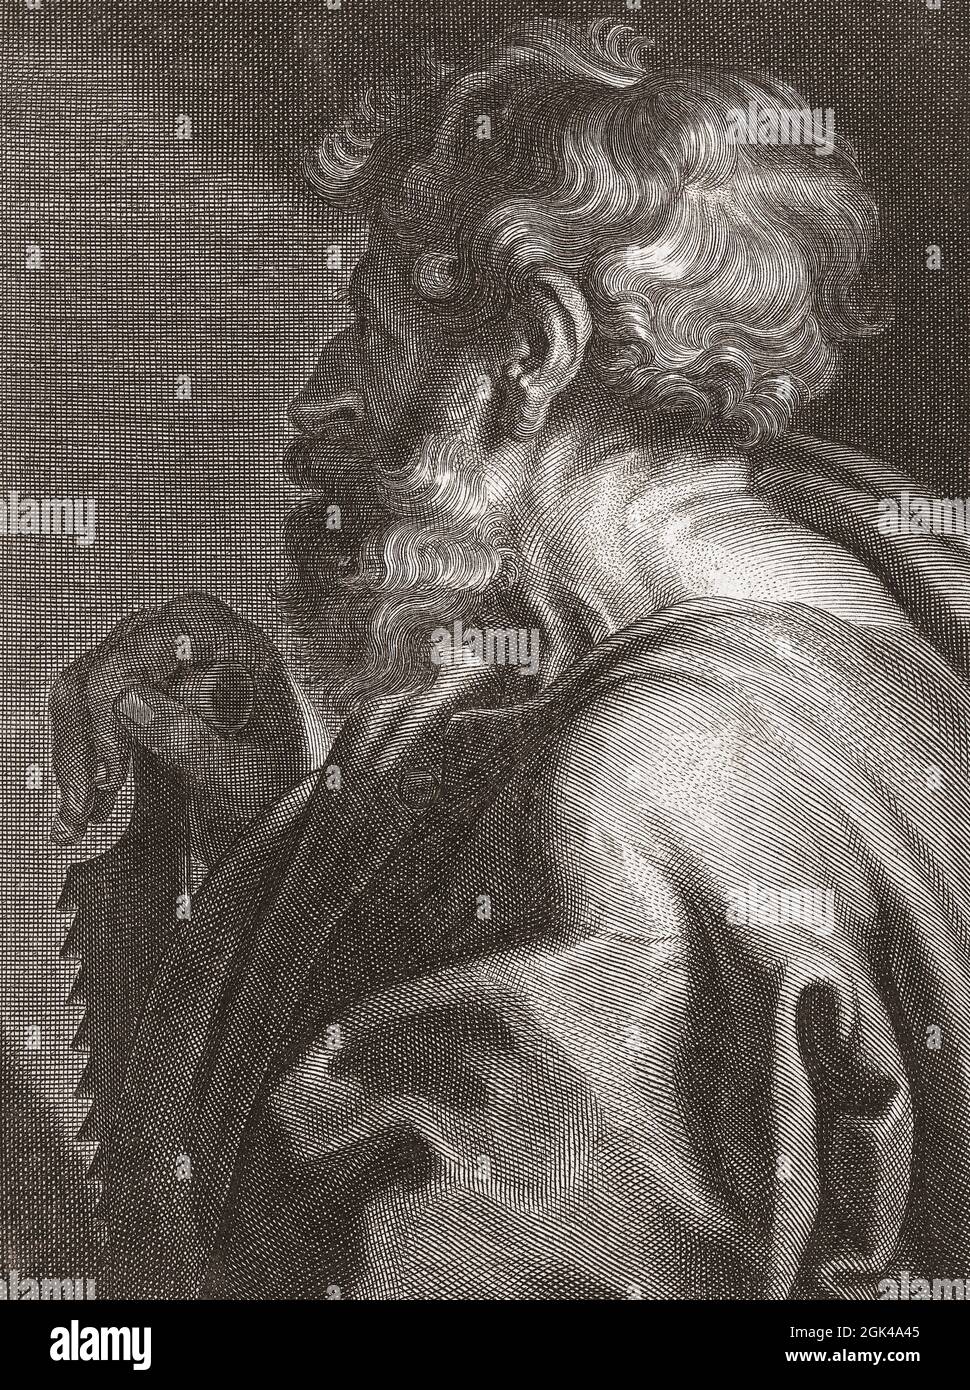 L'apostolo San Simone lo Zealot alias Simone il Cananeo o Simone il Cananeo. Nato e morto nel i secolo d.C. Il suo attributo identificante, come in questa immagine, è una sega che sostiene una delle molte storie sulla sua morte - che è stato segato a metà. Dopo un lavoro di Cornelis van Caukercken da un dipinto di Anthony van Dyck. Foto Stock